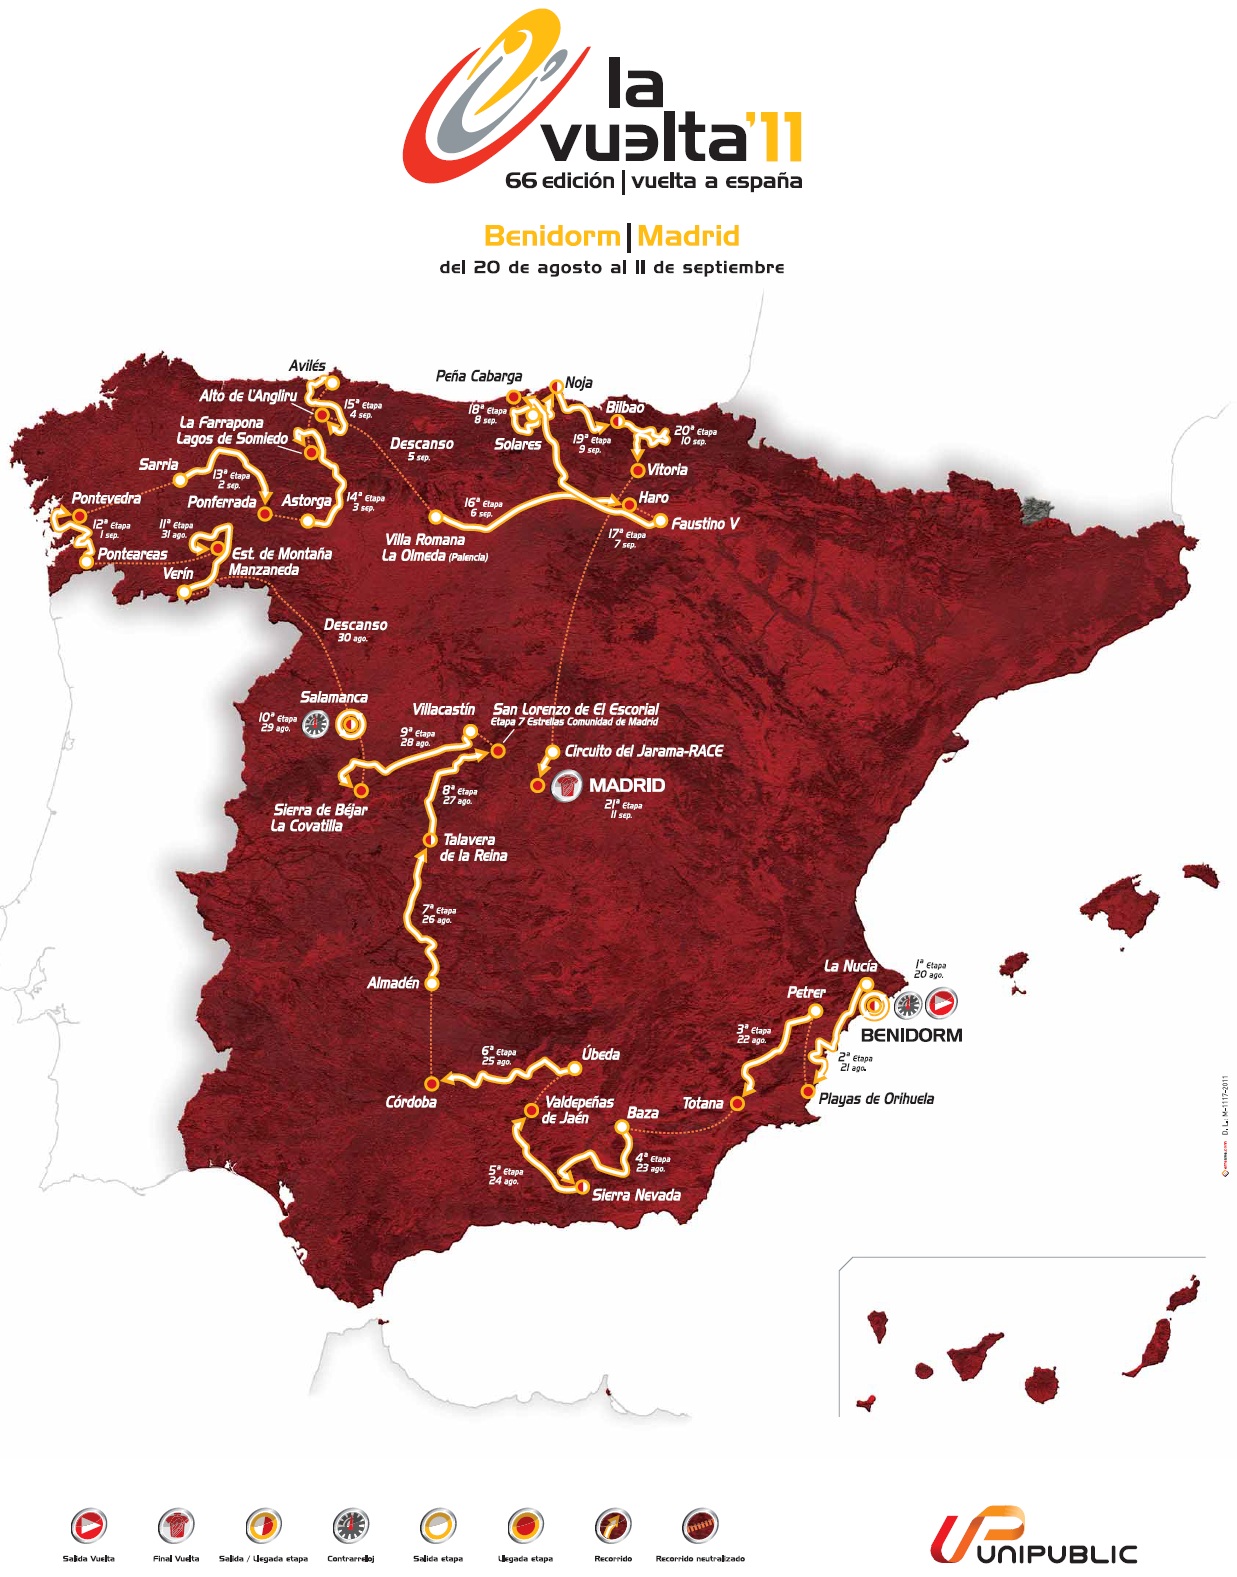 Streckenverlauf Vuelta a Espaa 2011